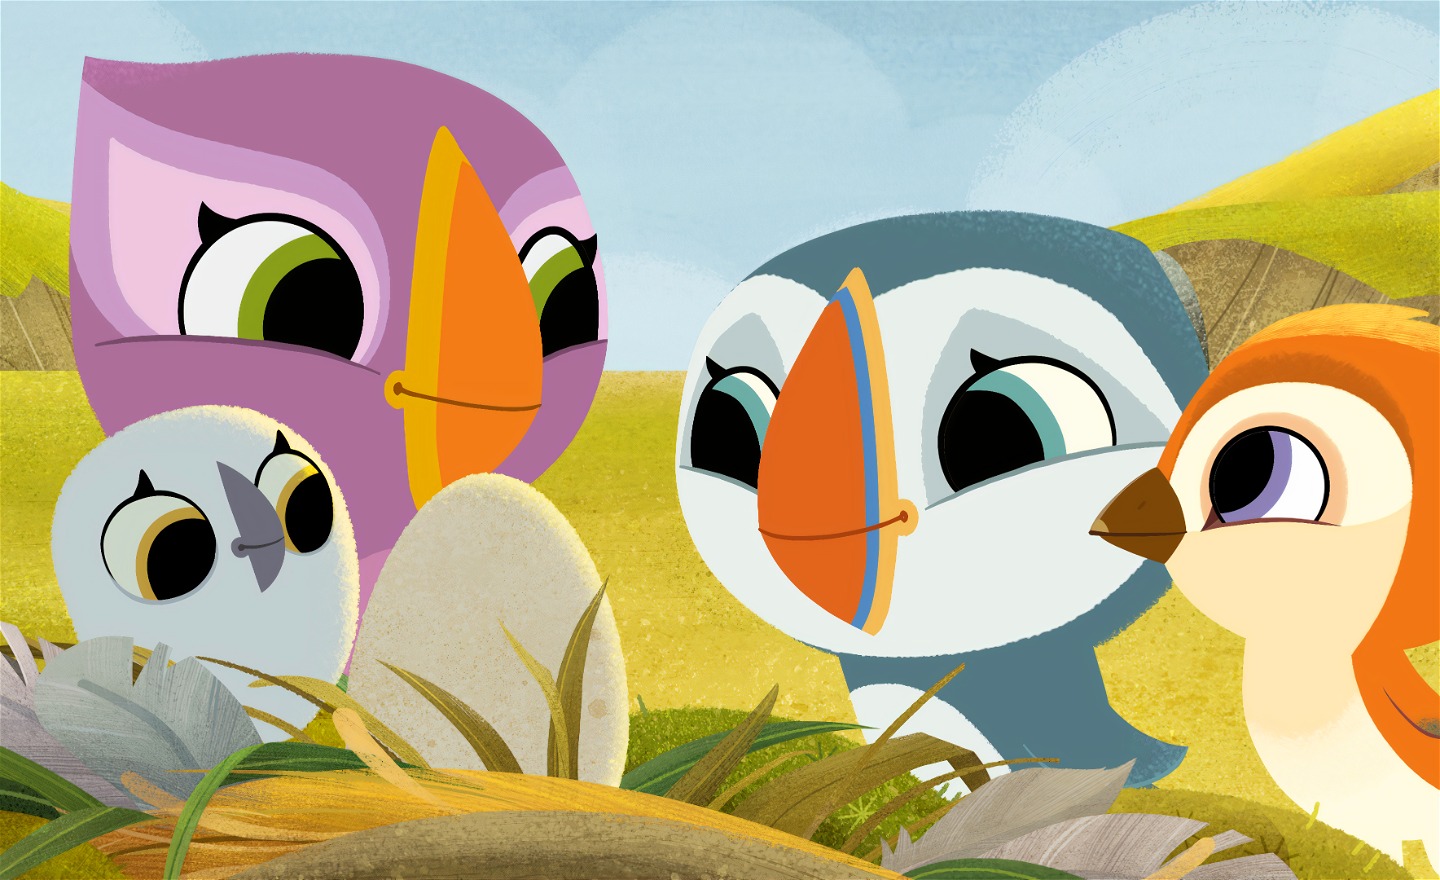 Fyra glada lunnefåglar tittar på ett okläckt fågelägg